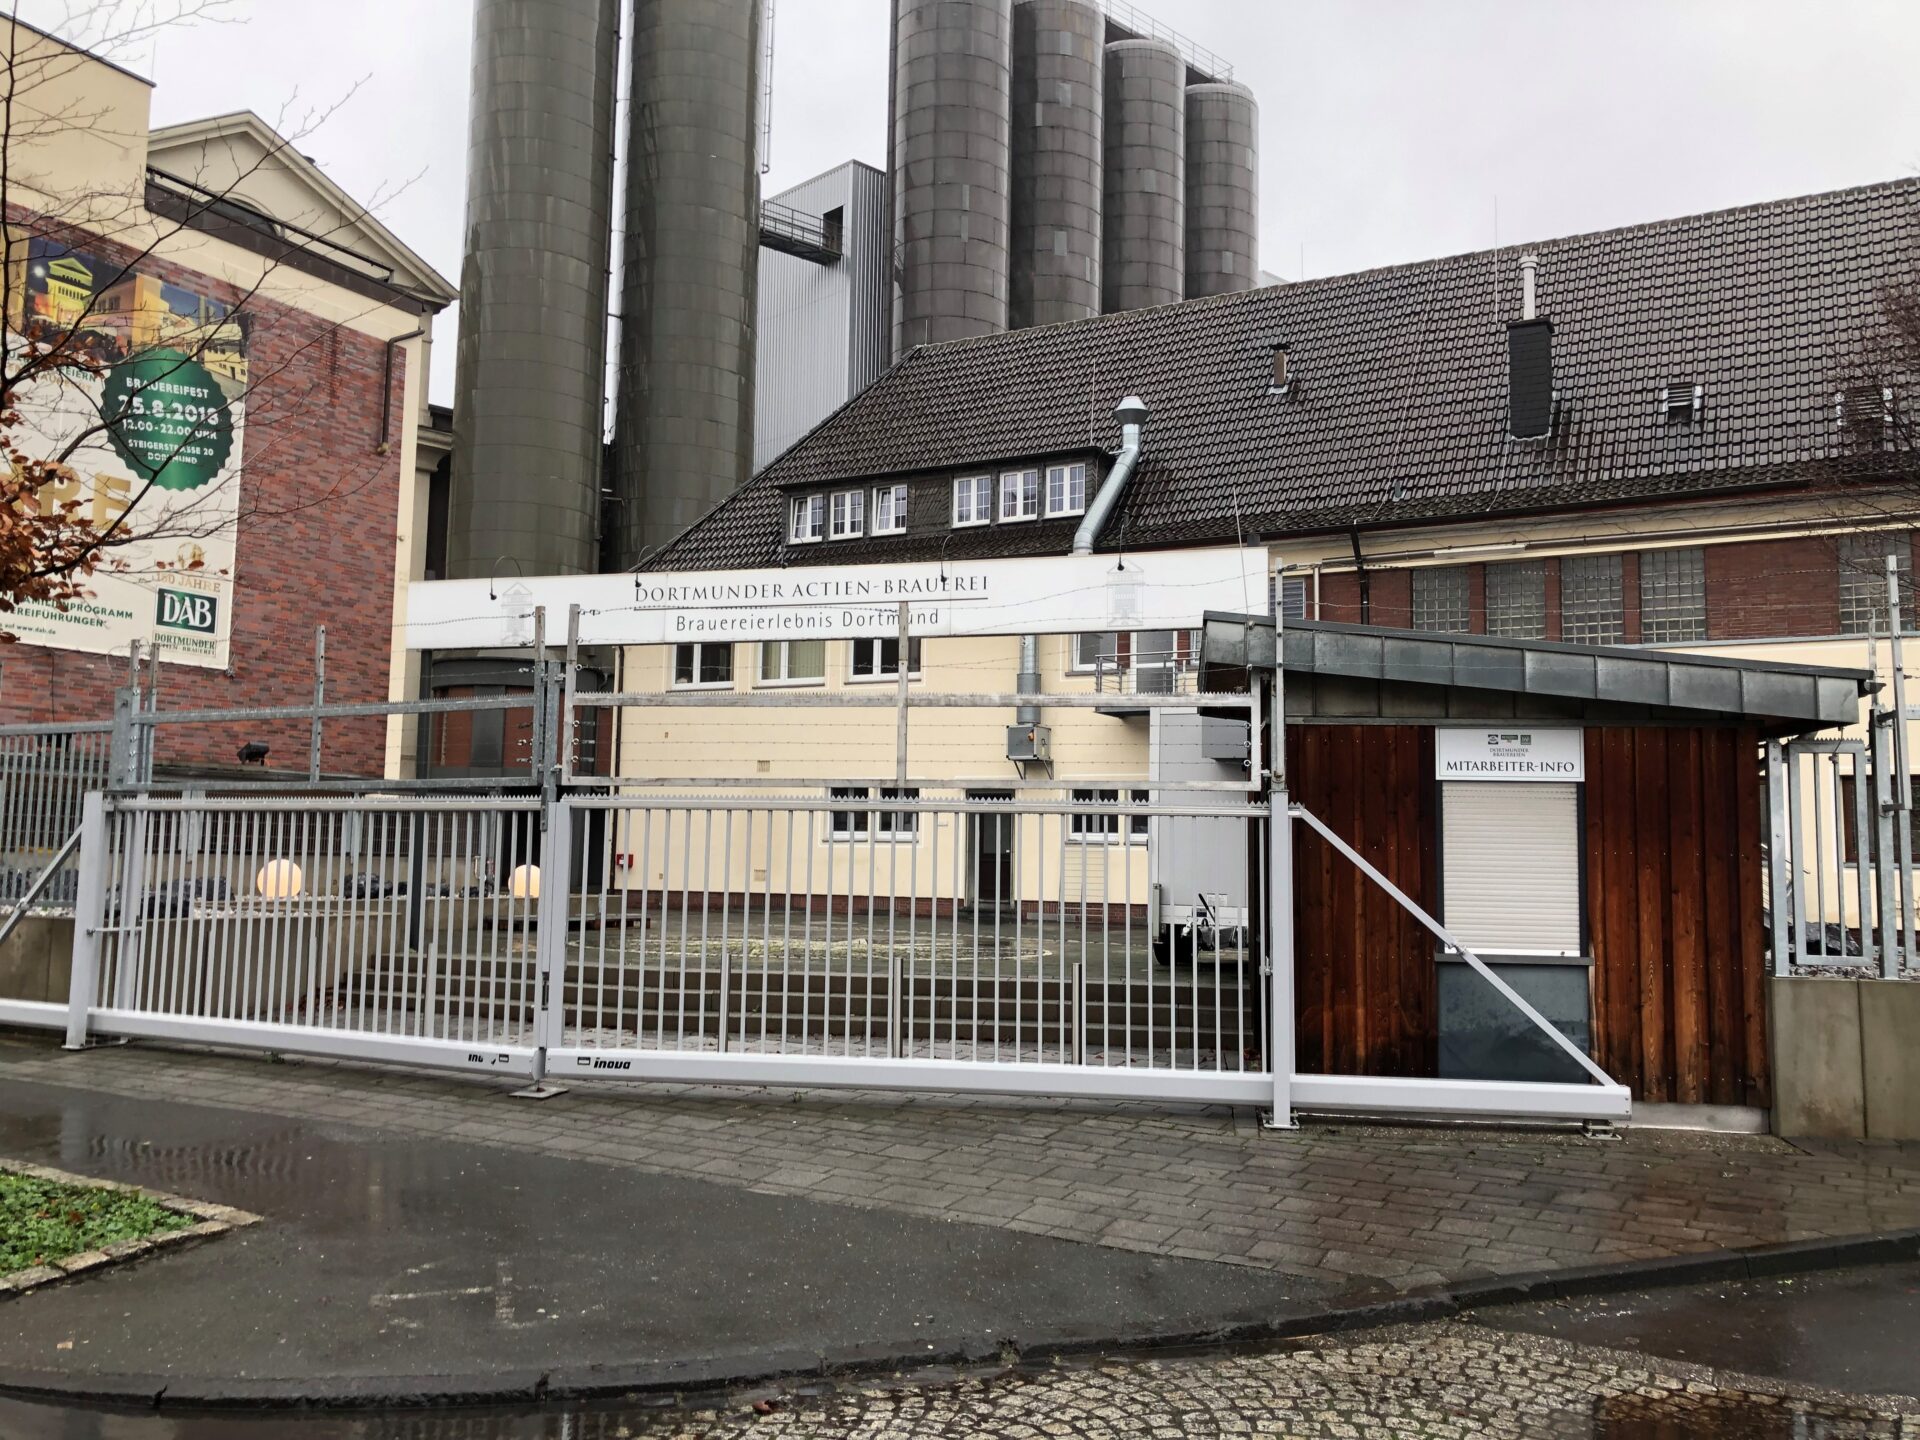 Das Brauerei-Museum in Dortmund verfügt über eigene, hinreichende Parkplätze auf dem Brauereigelände. Von dort sind es nur wenige Schritte zum Haupteingang.